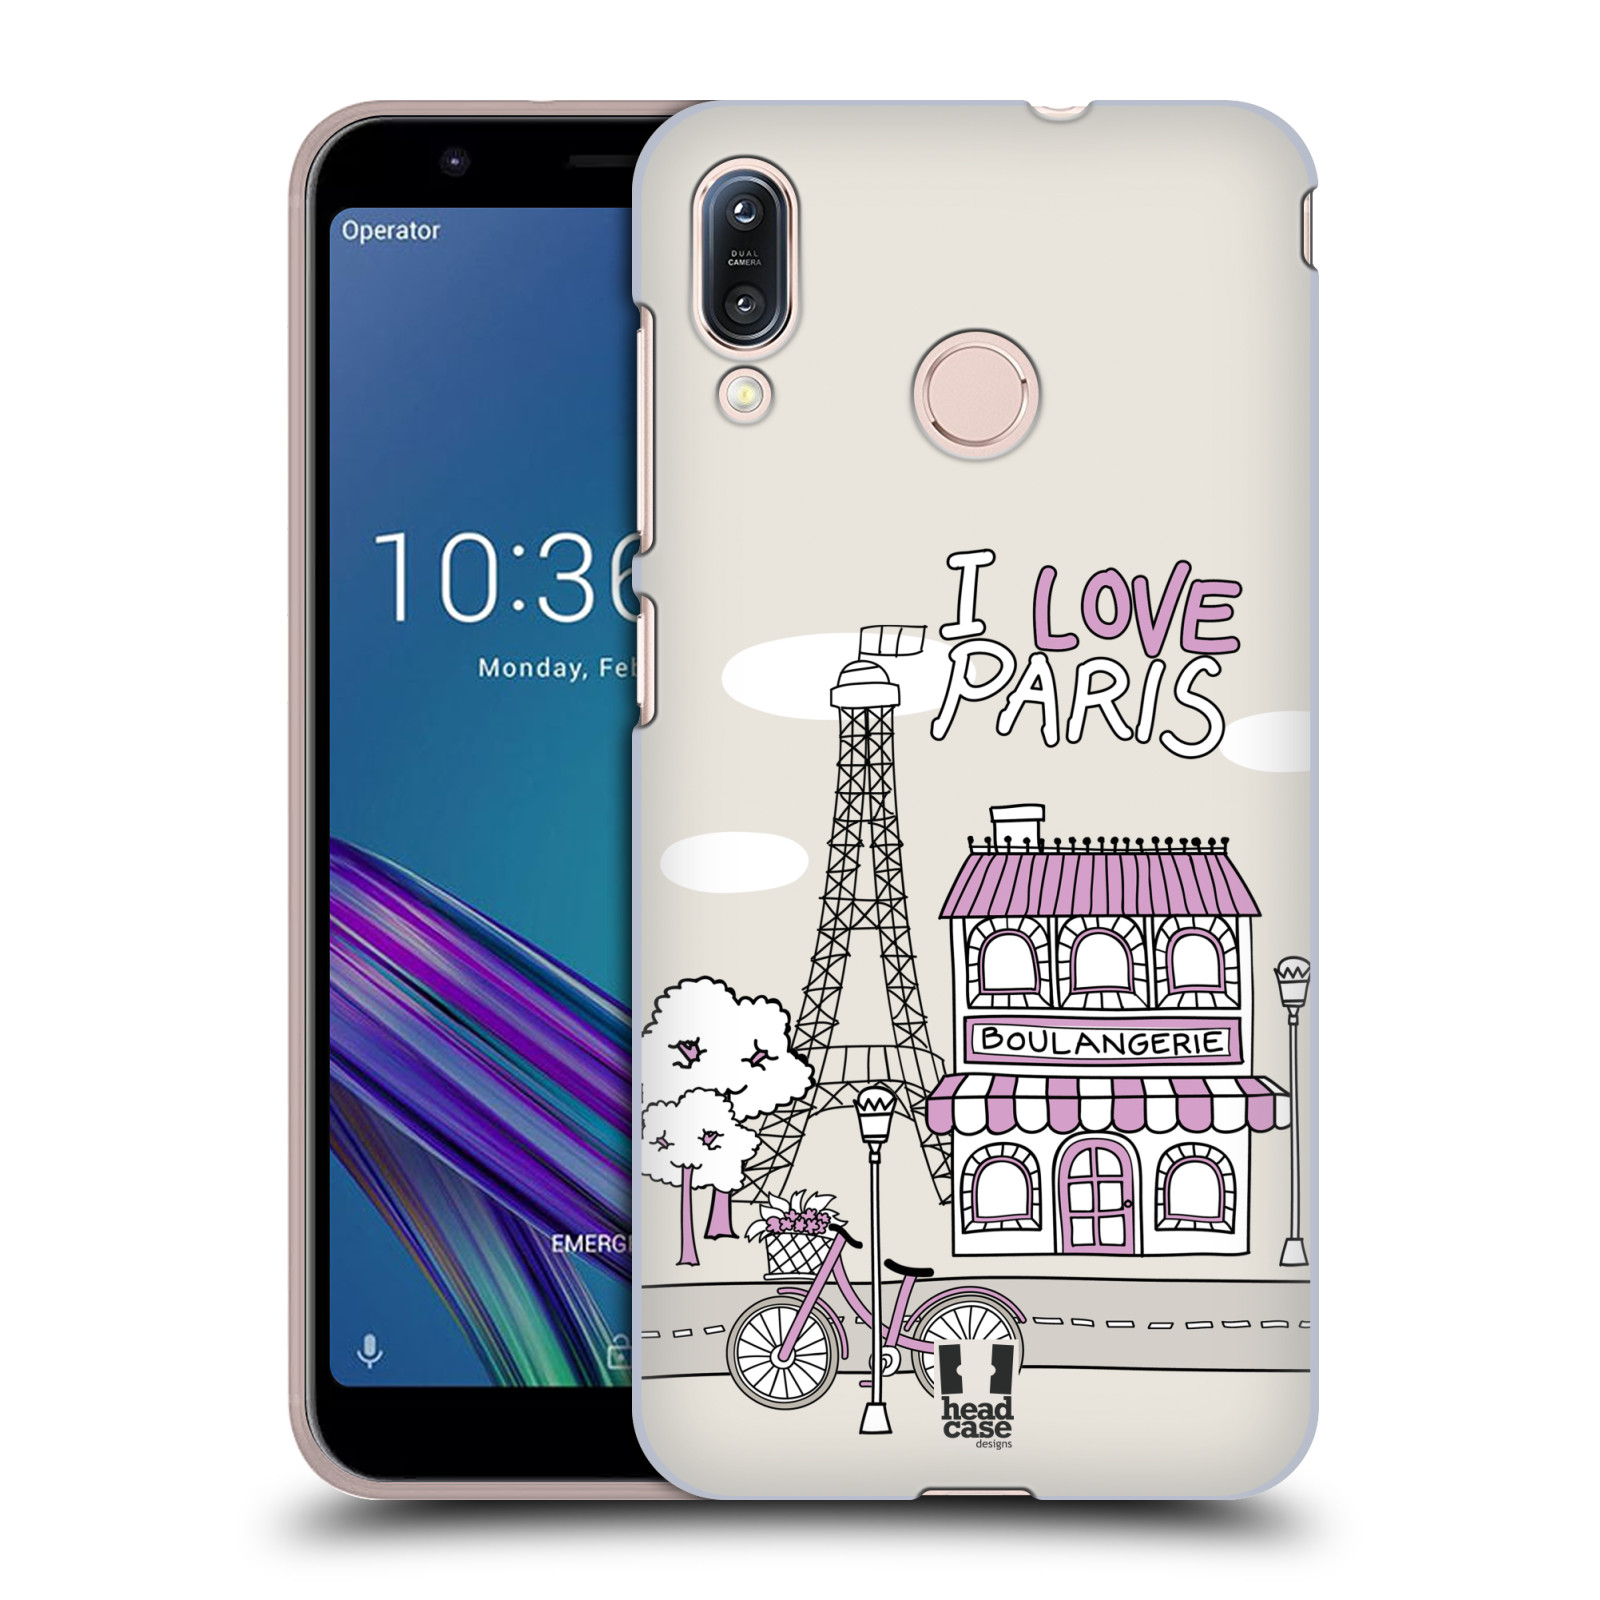 Pouzdro na mobil Asus Zenfone Max M1 (ZB555KL) - HEAD CASE - vzor Kreslená městečka FIALOVÁ, Paříž, Francie, I LOVE PARIS